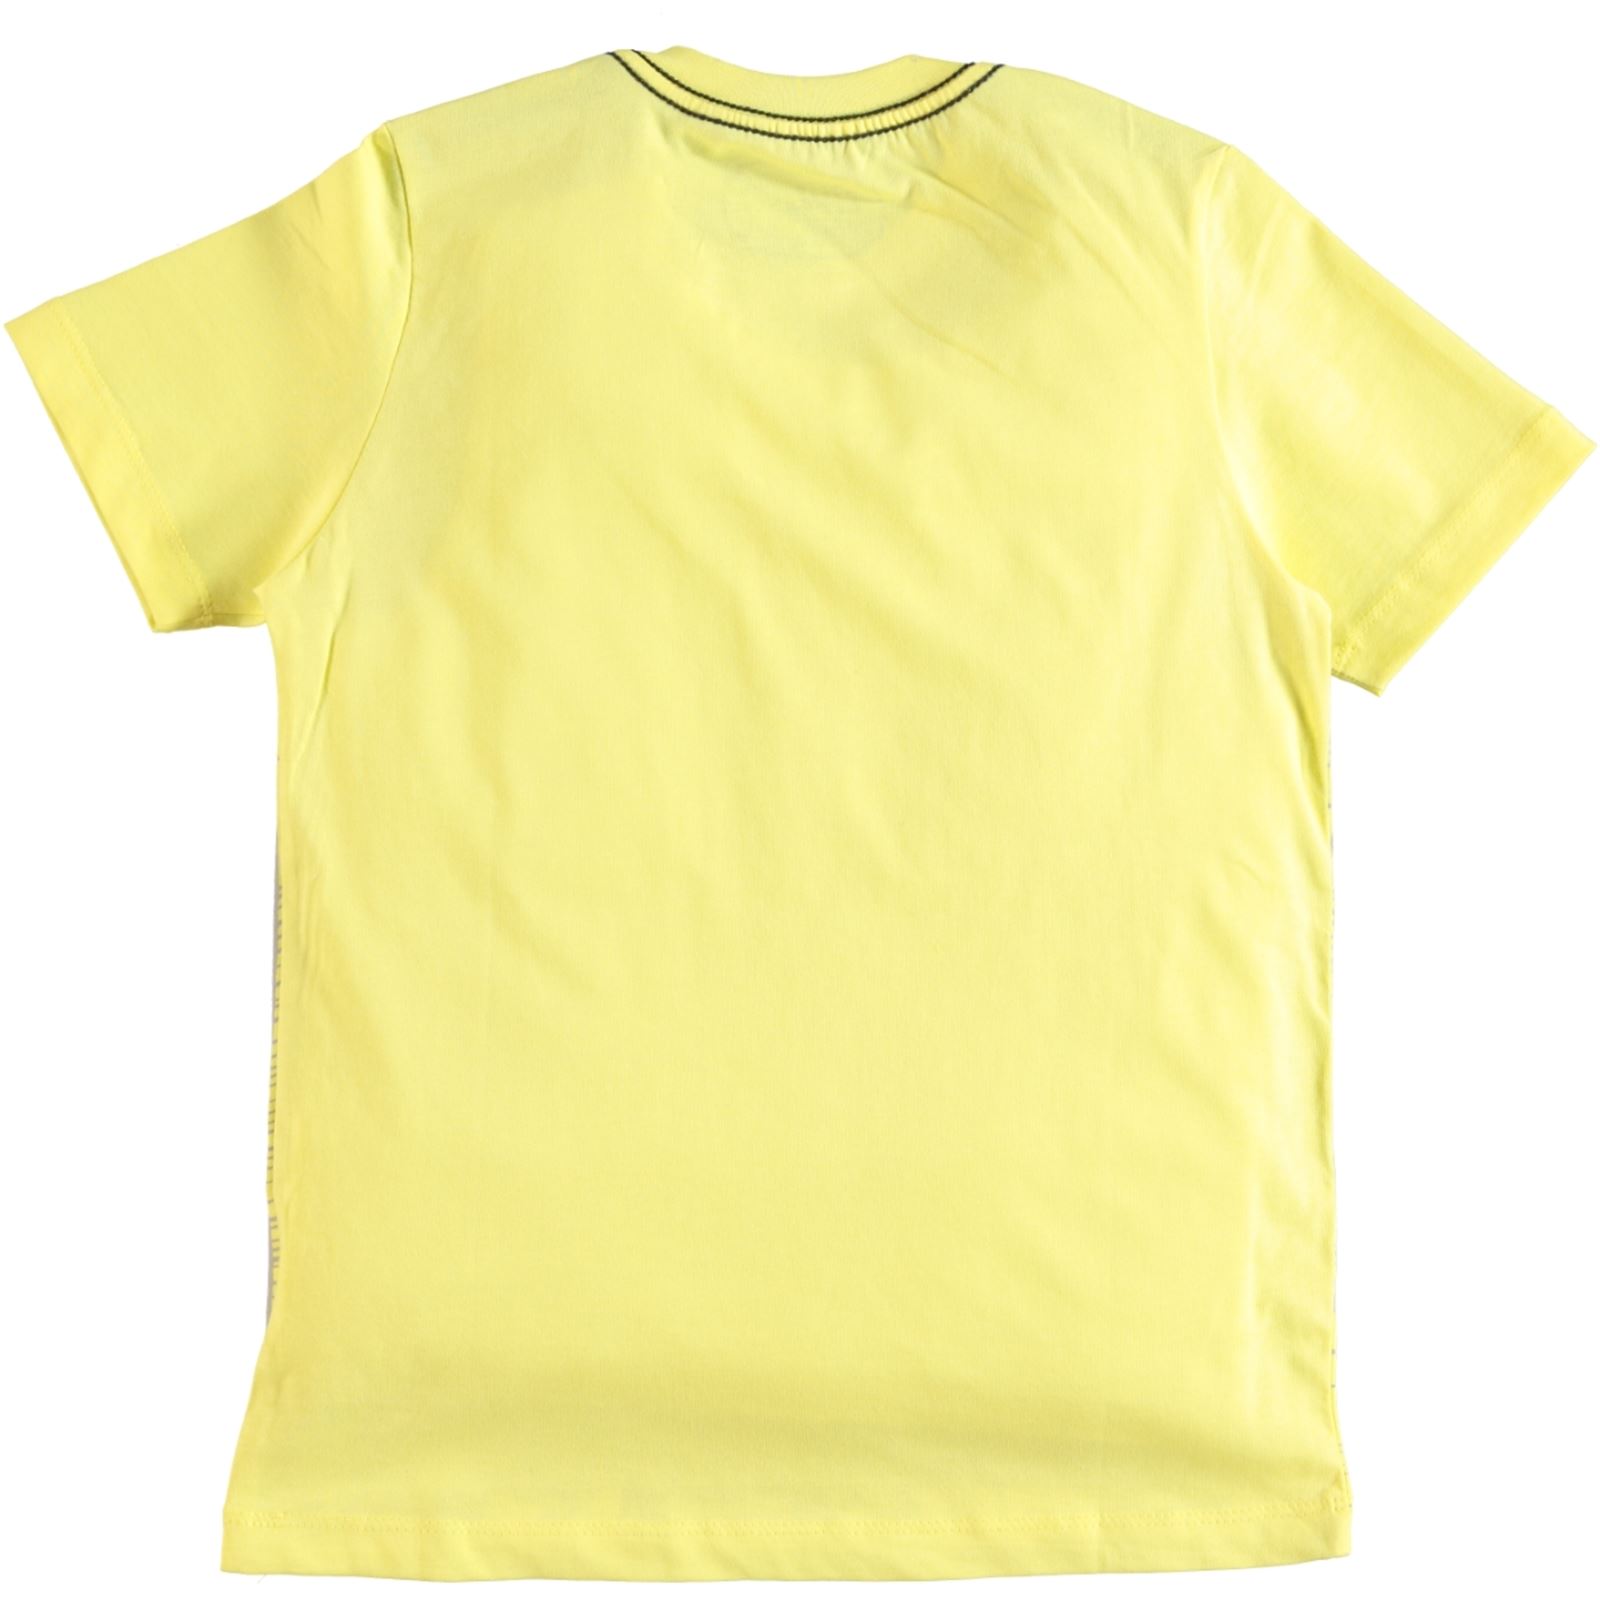 Cvl Erkek Çocuk Tişört 6-9 Yaş Sarı